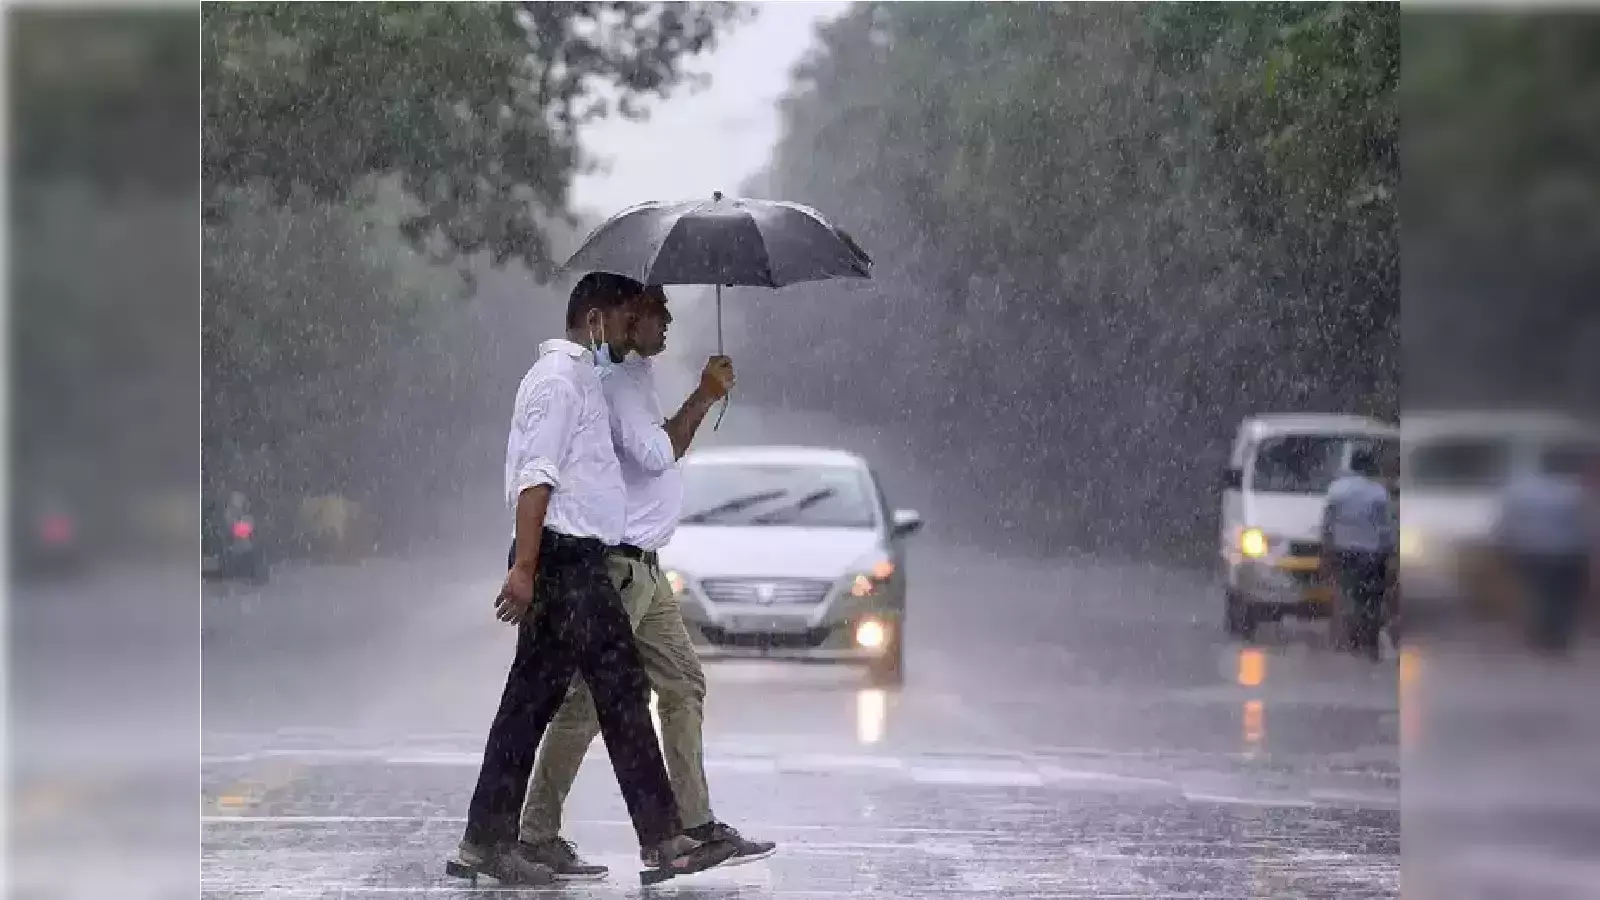 Weather:  राजस्थान में बारिश का दौर जारी , जयपुर-भरतपुर संभाग में अतिभारी वर्षा की चेतावनी